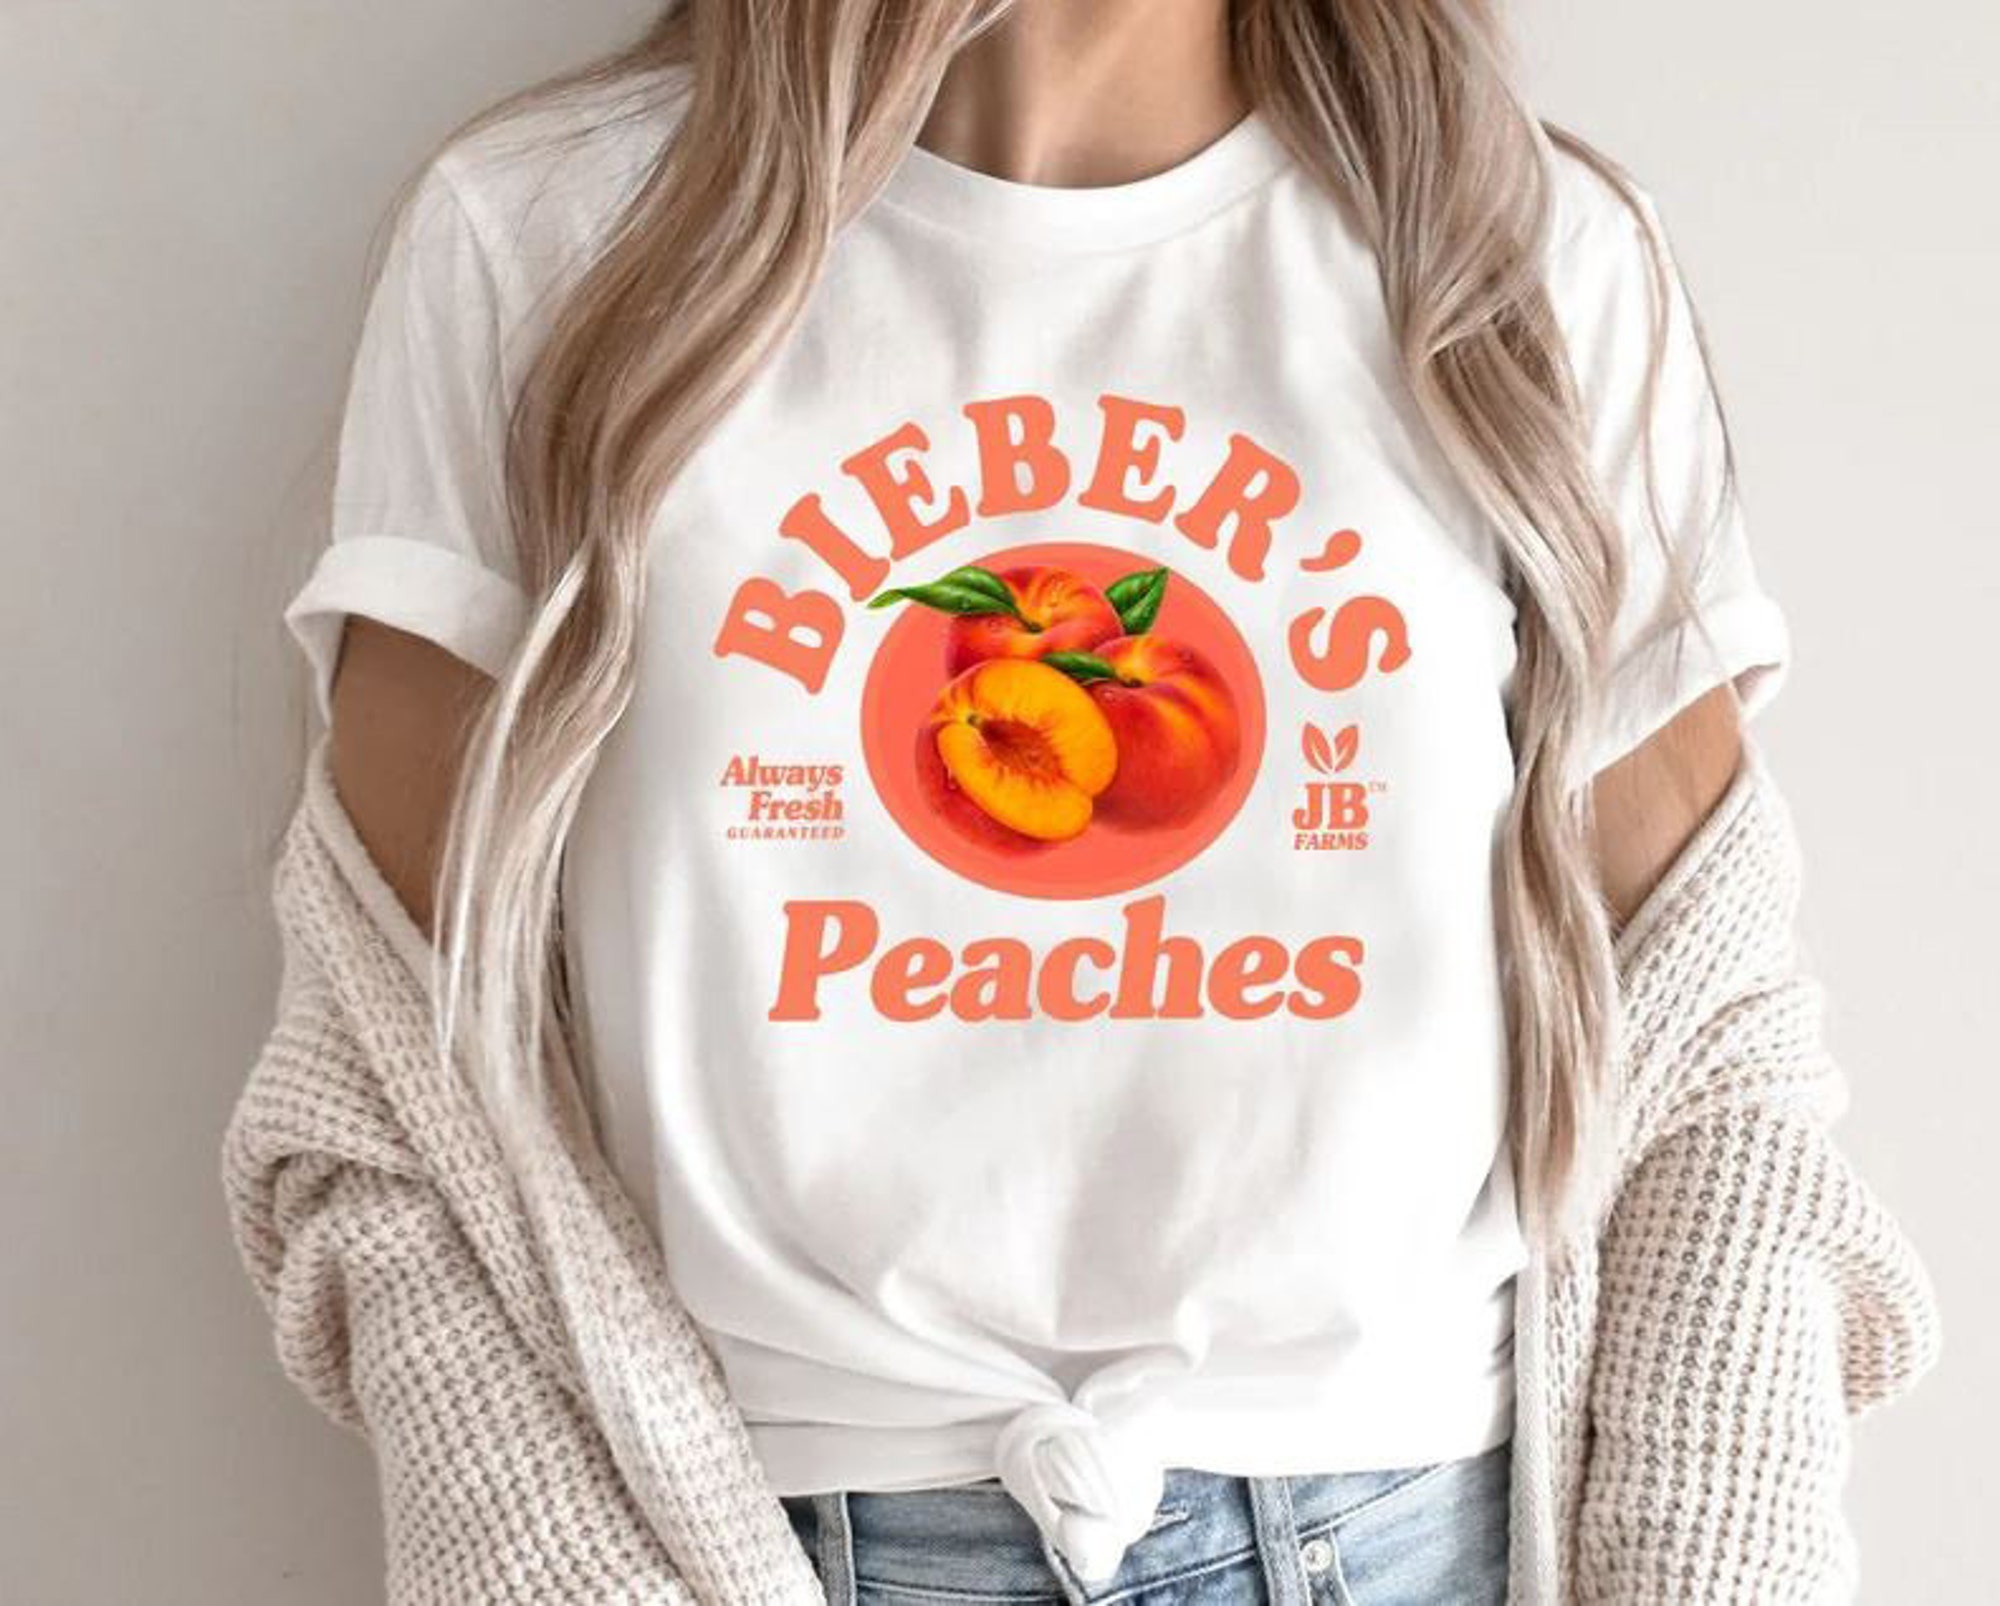 Discover Maglietta T-Shirt Justin Bieber Uomo Donna Bambini - Bieber's Peaches